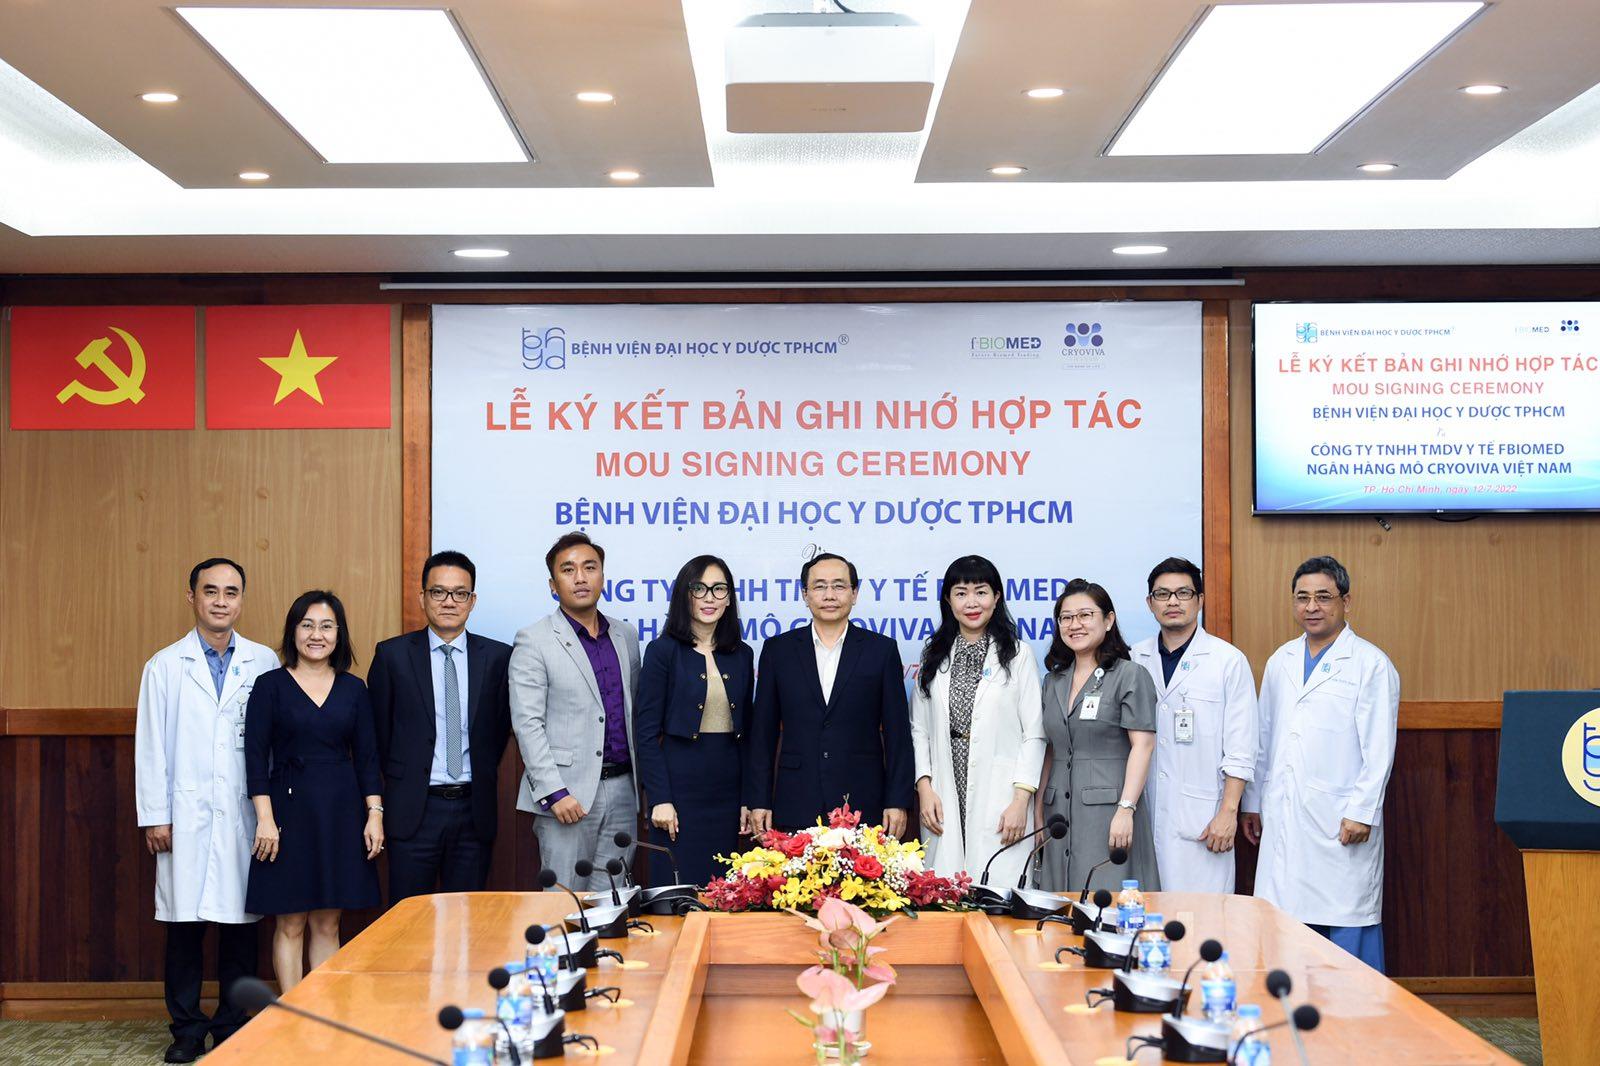 Cryoviva Việt Nam hợp tác cùng bệnh viện Đại học Y dược TP.HCM, niềm hy vọng mới cho bệnh nhân điều trị bằng tế bào gốc - Ảnh 1.